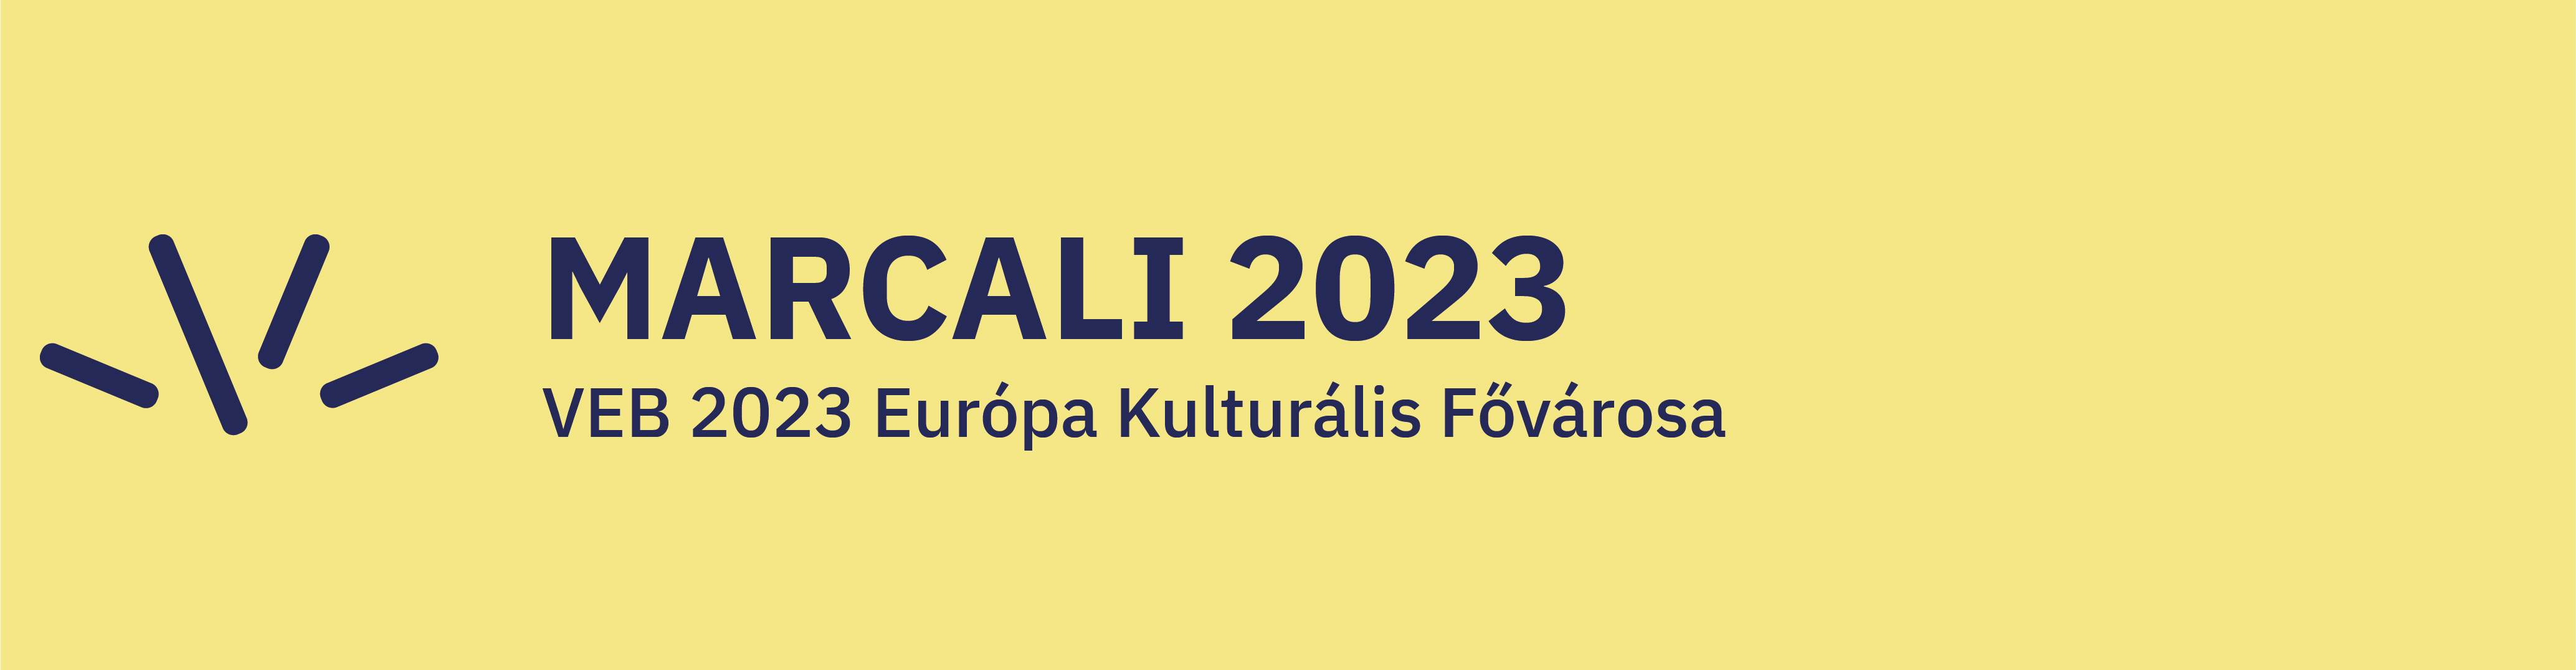 Marcali 2023 Európa Kulturális Főváros logoja